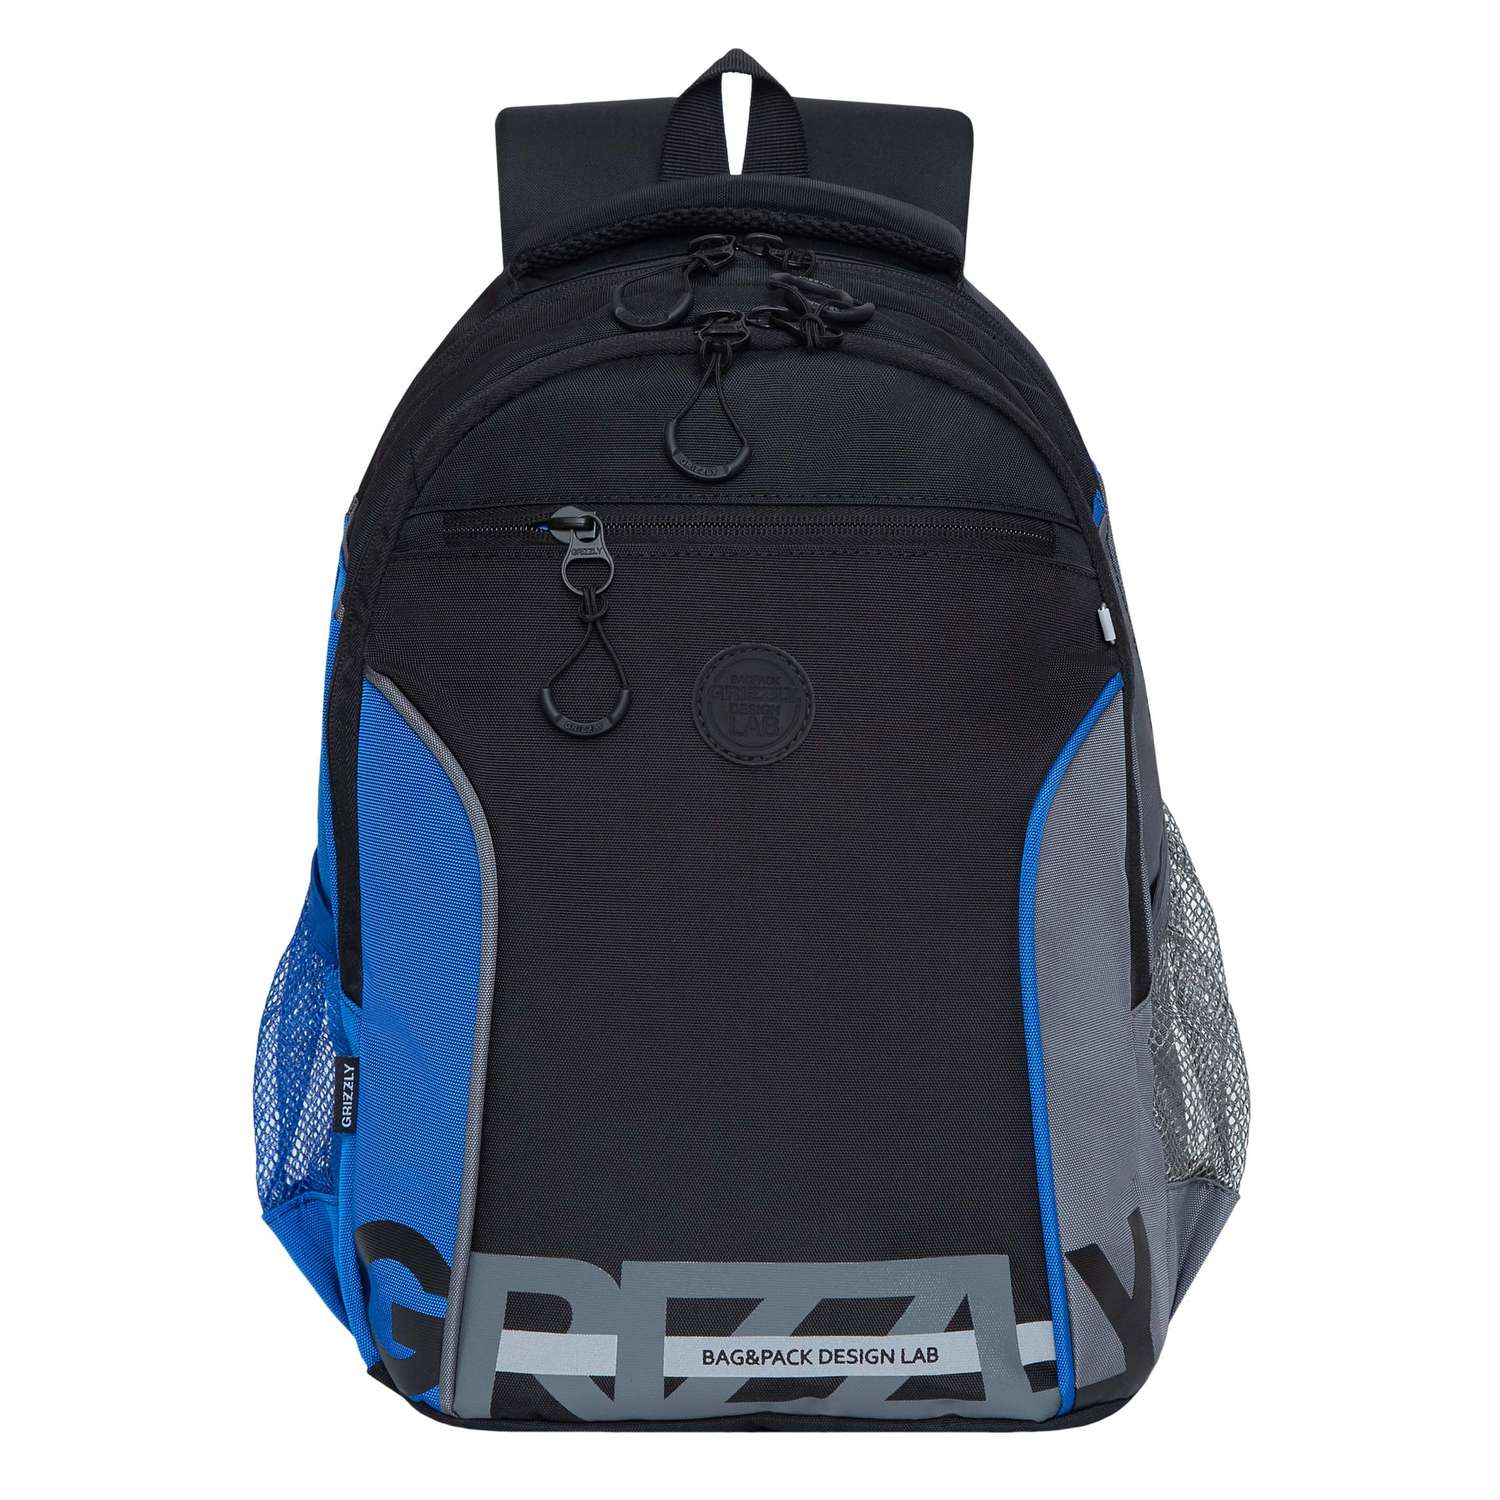 Рюкзак школьный Grizzly Черный-Синий-Серый RB-259-1/2 - фото 2